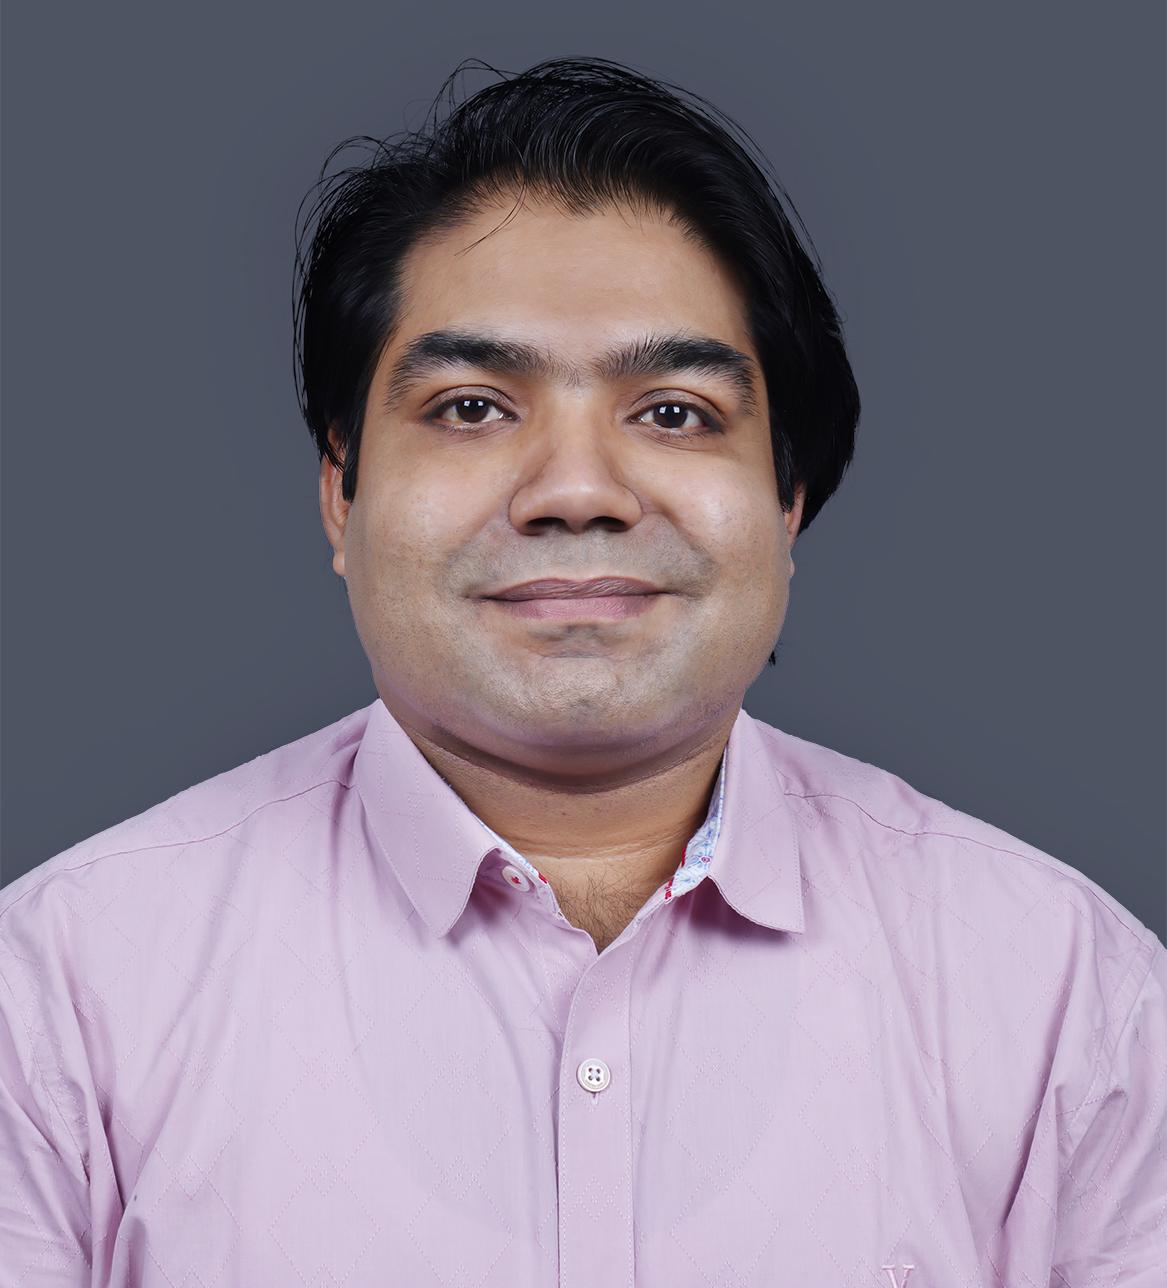 Dr. Rohit Kumar Garg